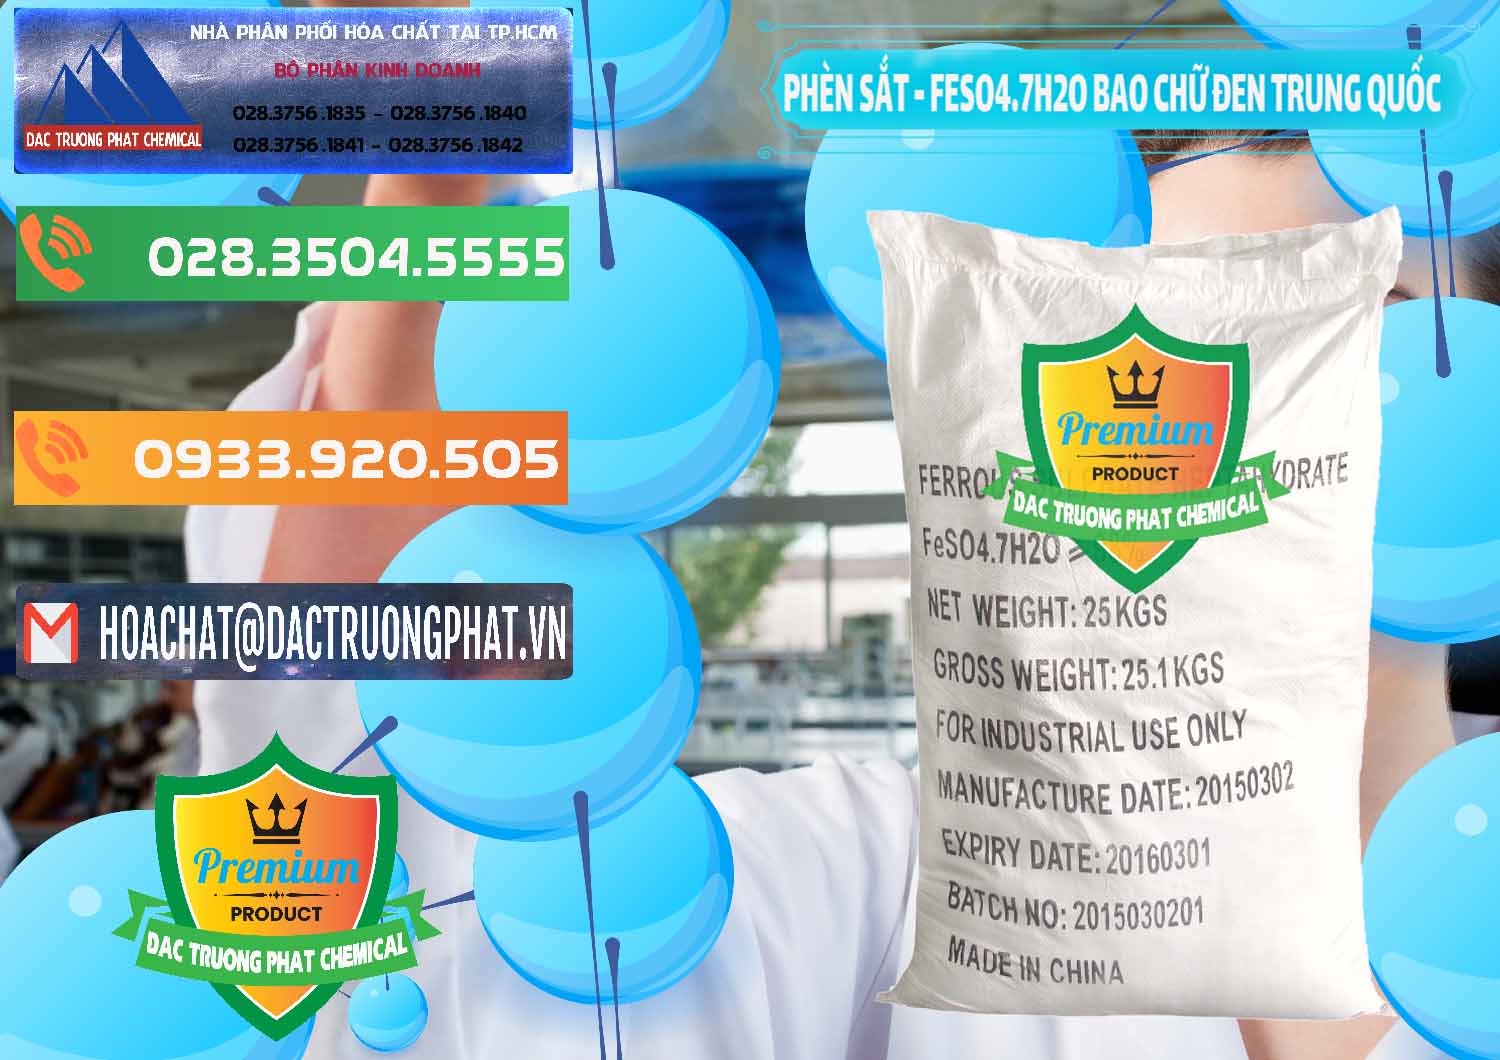 Bán _ cung cấp Phèn Sắt - FeSO4.7H2O Bao Chữ Đen Trung Quốc China - 0234 - Công ty phân phối ( cung cấp ) hóa chất tại TP.HCM - hoachatxulynuoc.com.vn